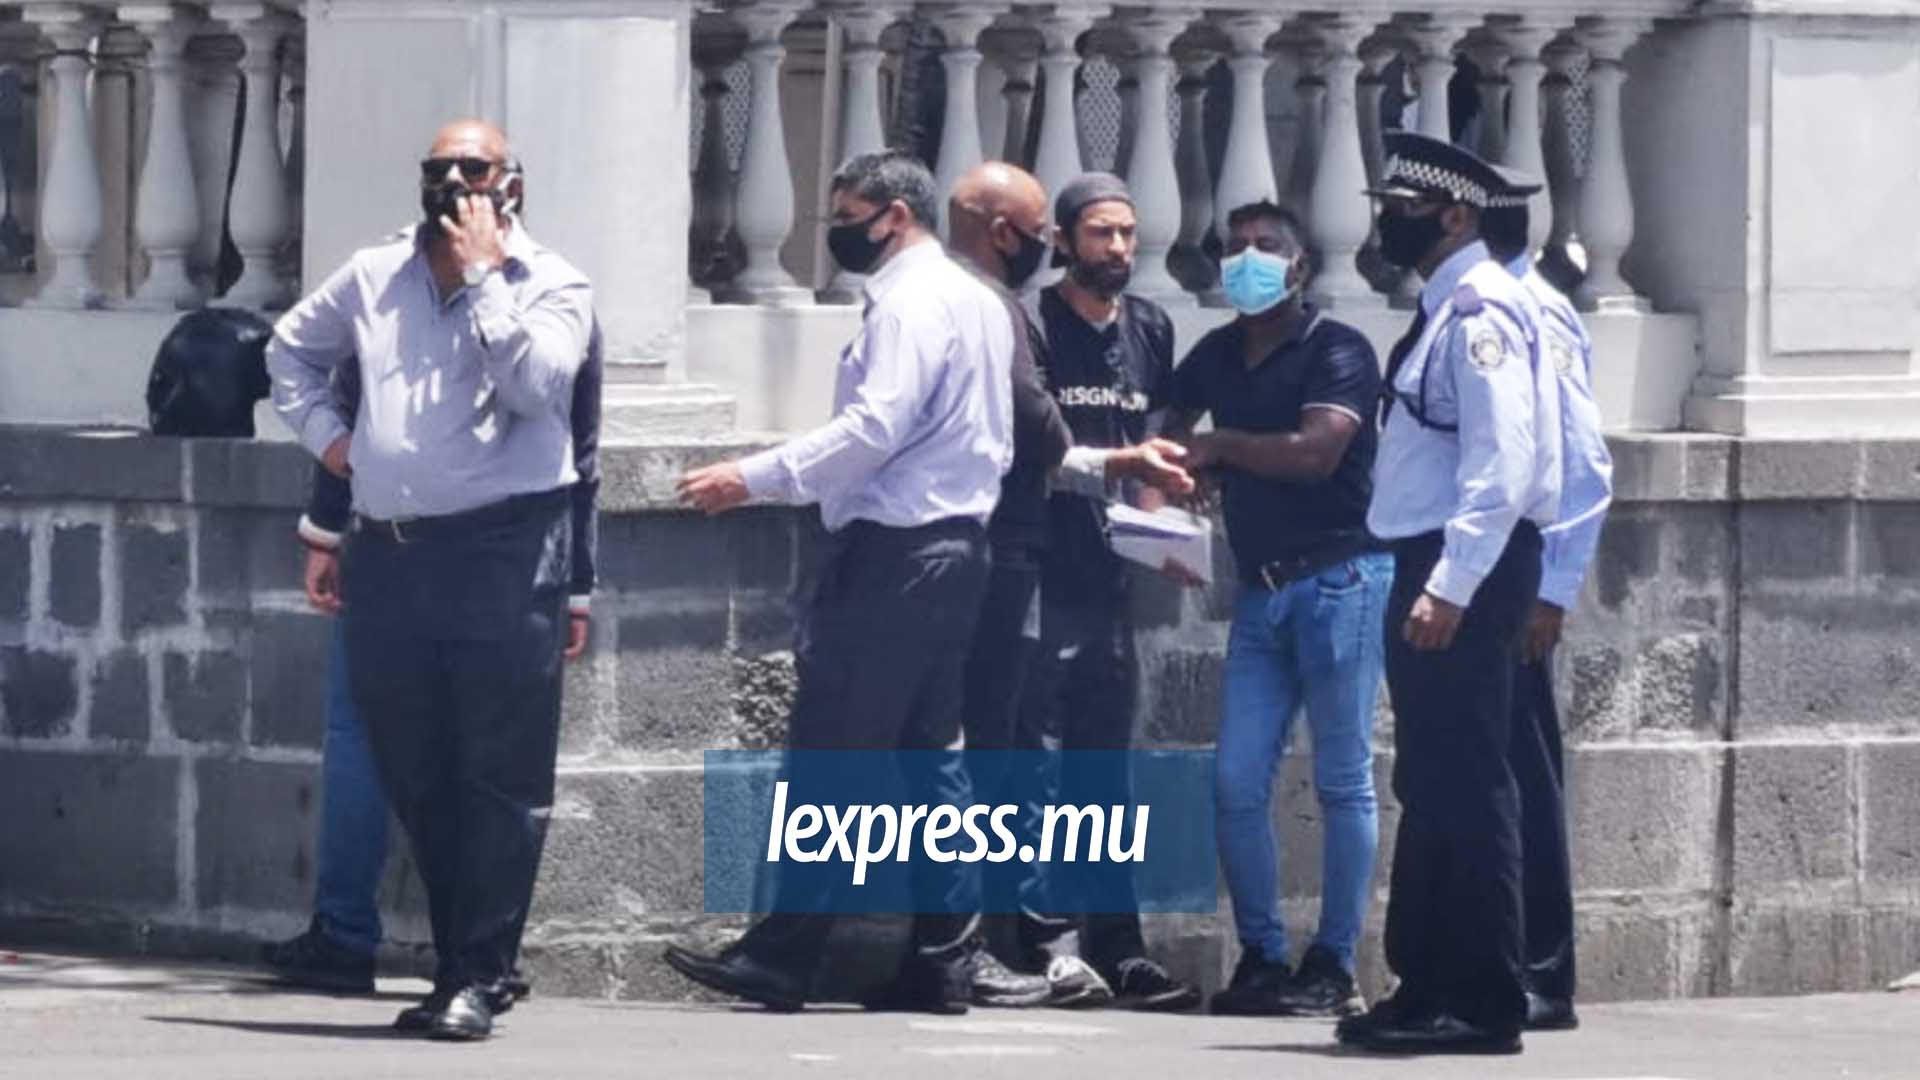 Manifestation devant le parlement: l'activiste Ivan Bibi interpellé par la police 